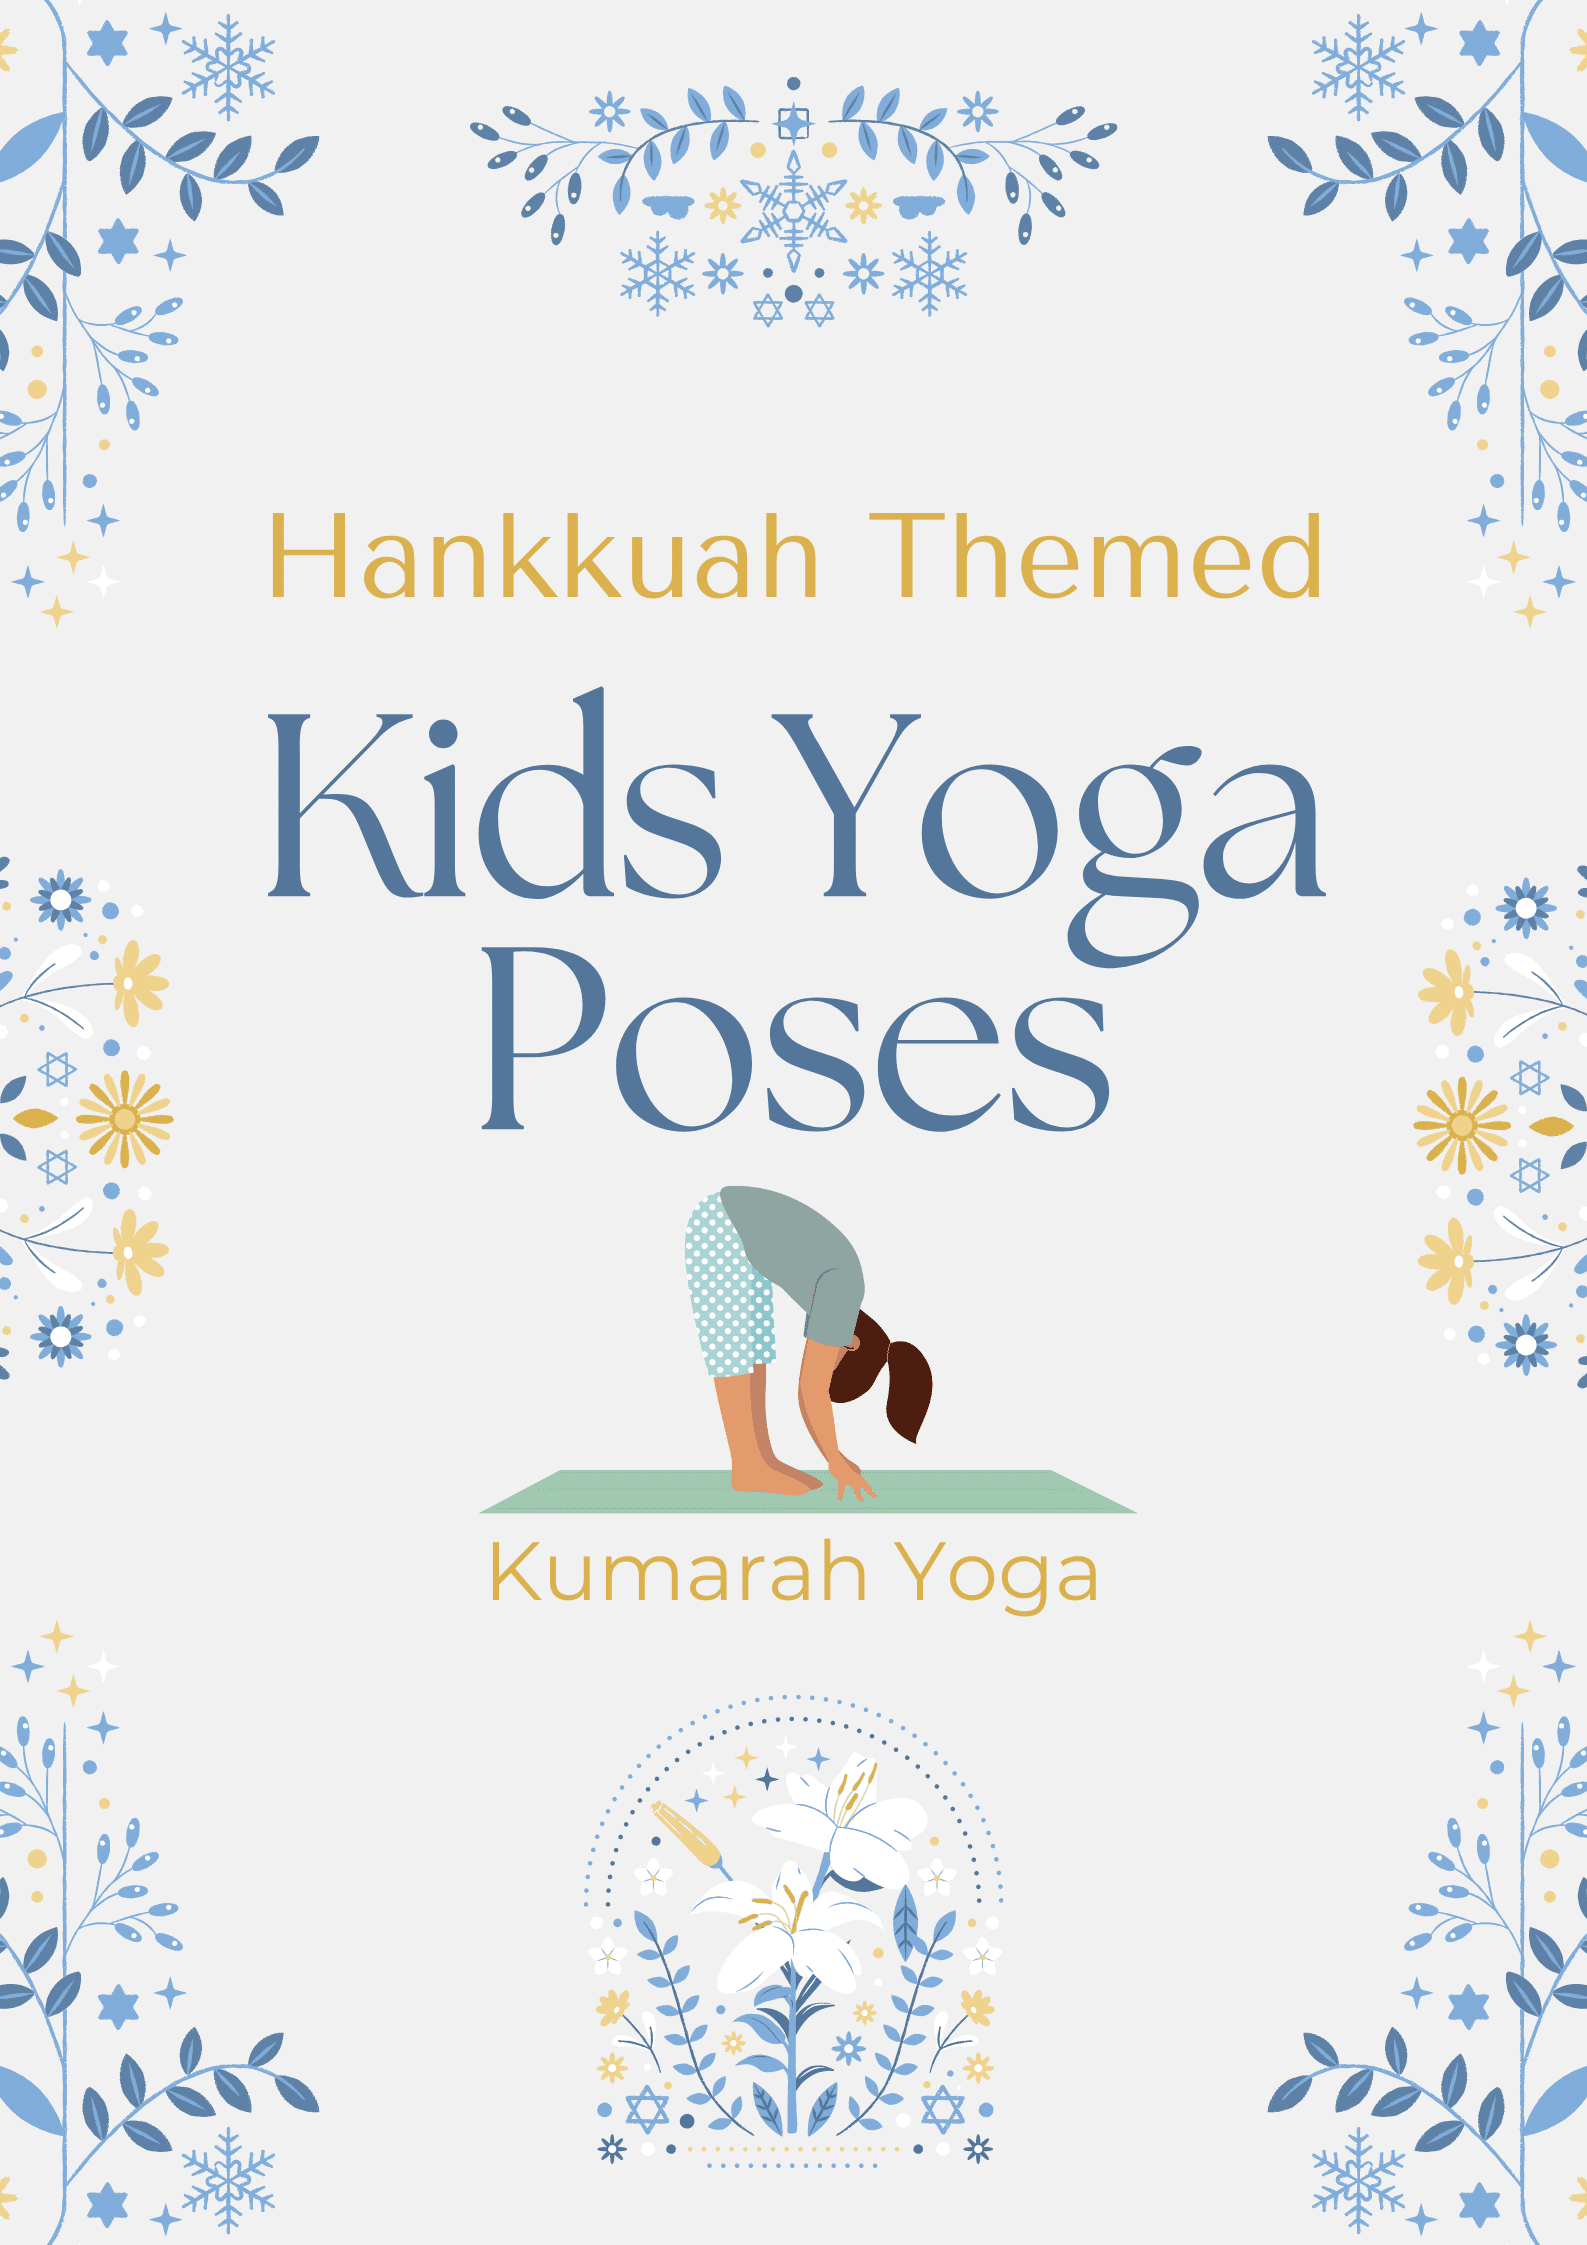 Yin Yoga Poses: Printable Yin Yoga Posture Poster with Poses and Names.  Create A Yin Yoga sequence! | Yin yoga sequence, Yin yoga poses, Yin yoga